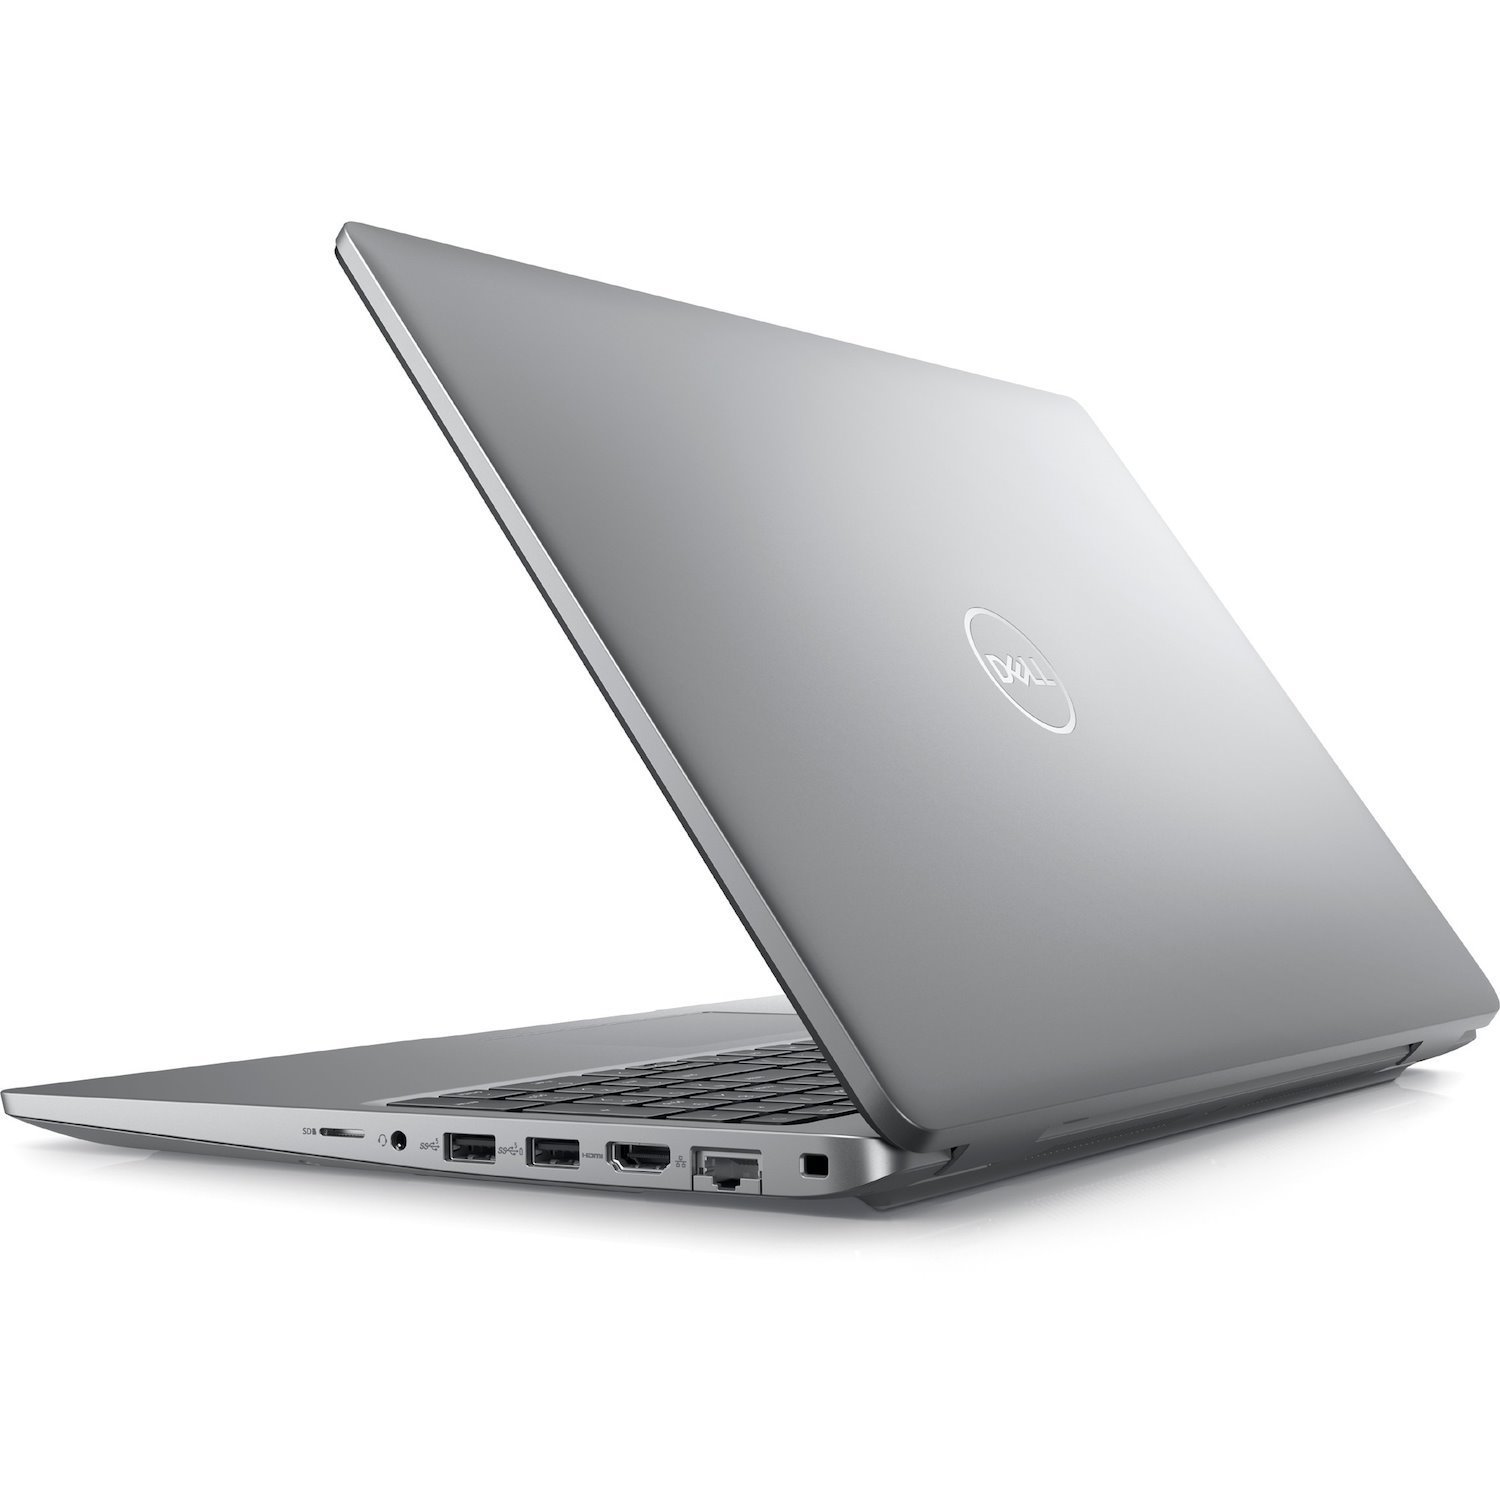 Dell Latitude 5540 15.6" Notebook - Full HD - 1920 x 1080 - Intel Core i5 13th Gen - 16 GB Total RAM - 256 GB SSD - Titan Gray 